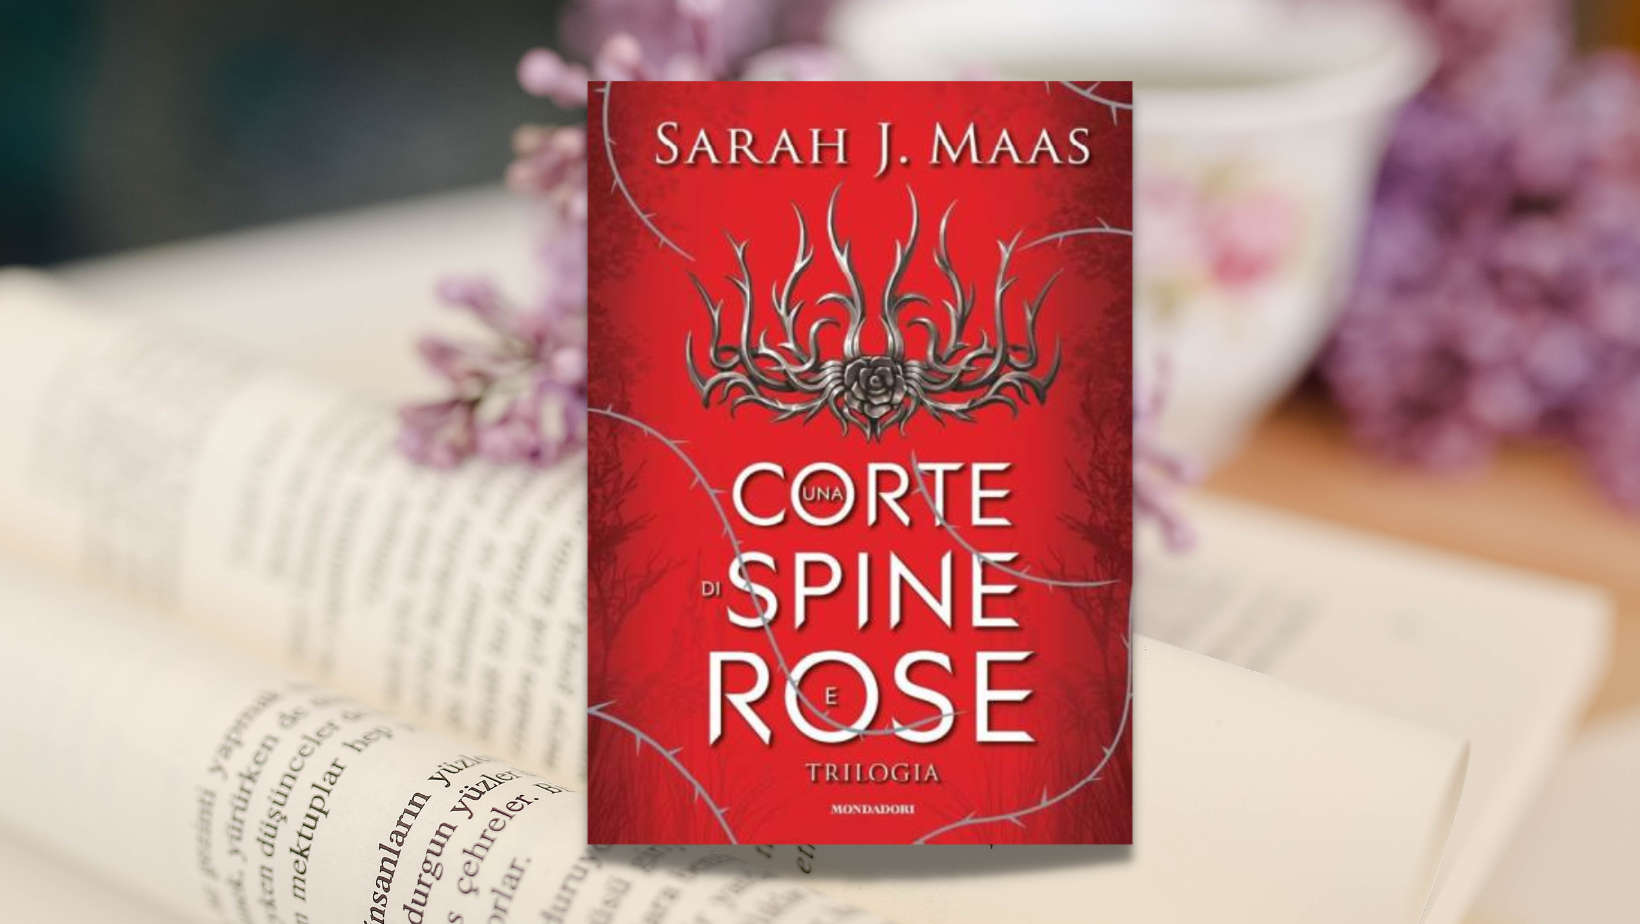 Una corte di spine e rose, recensione della trilogia di Sarah J. Maas